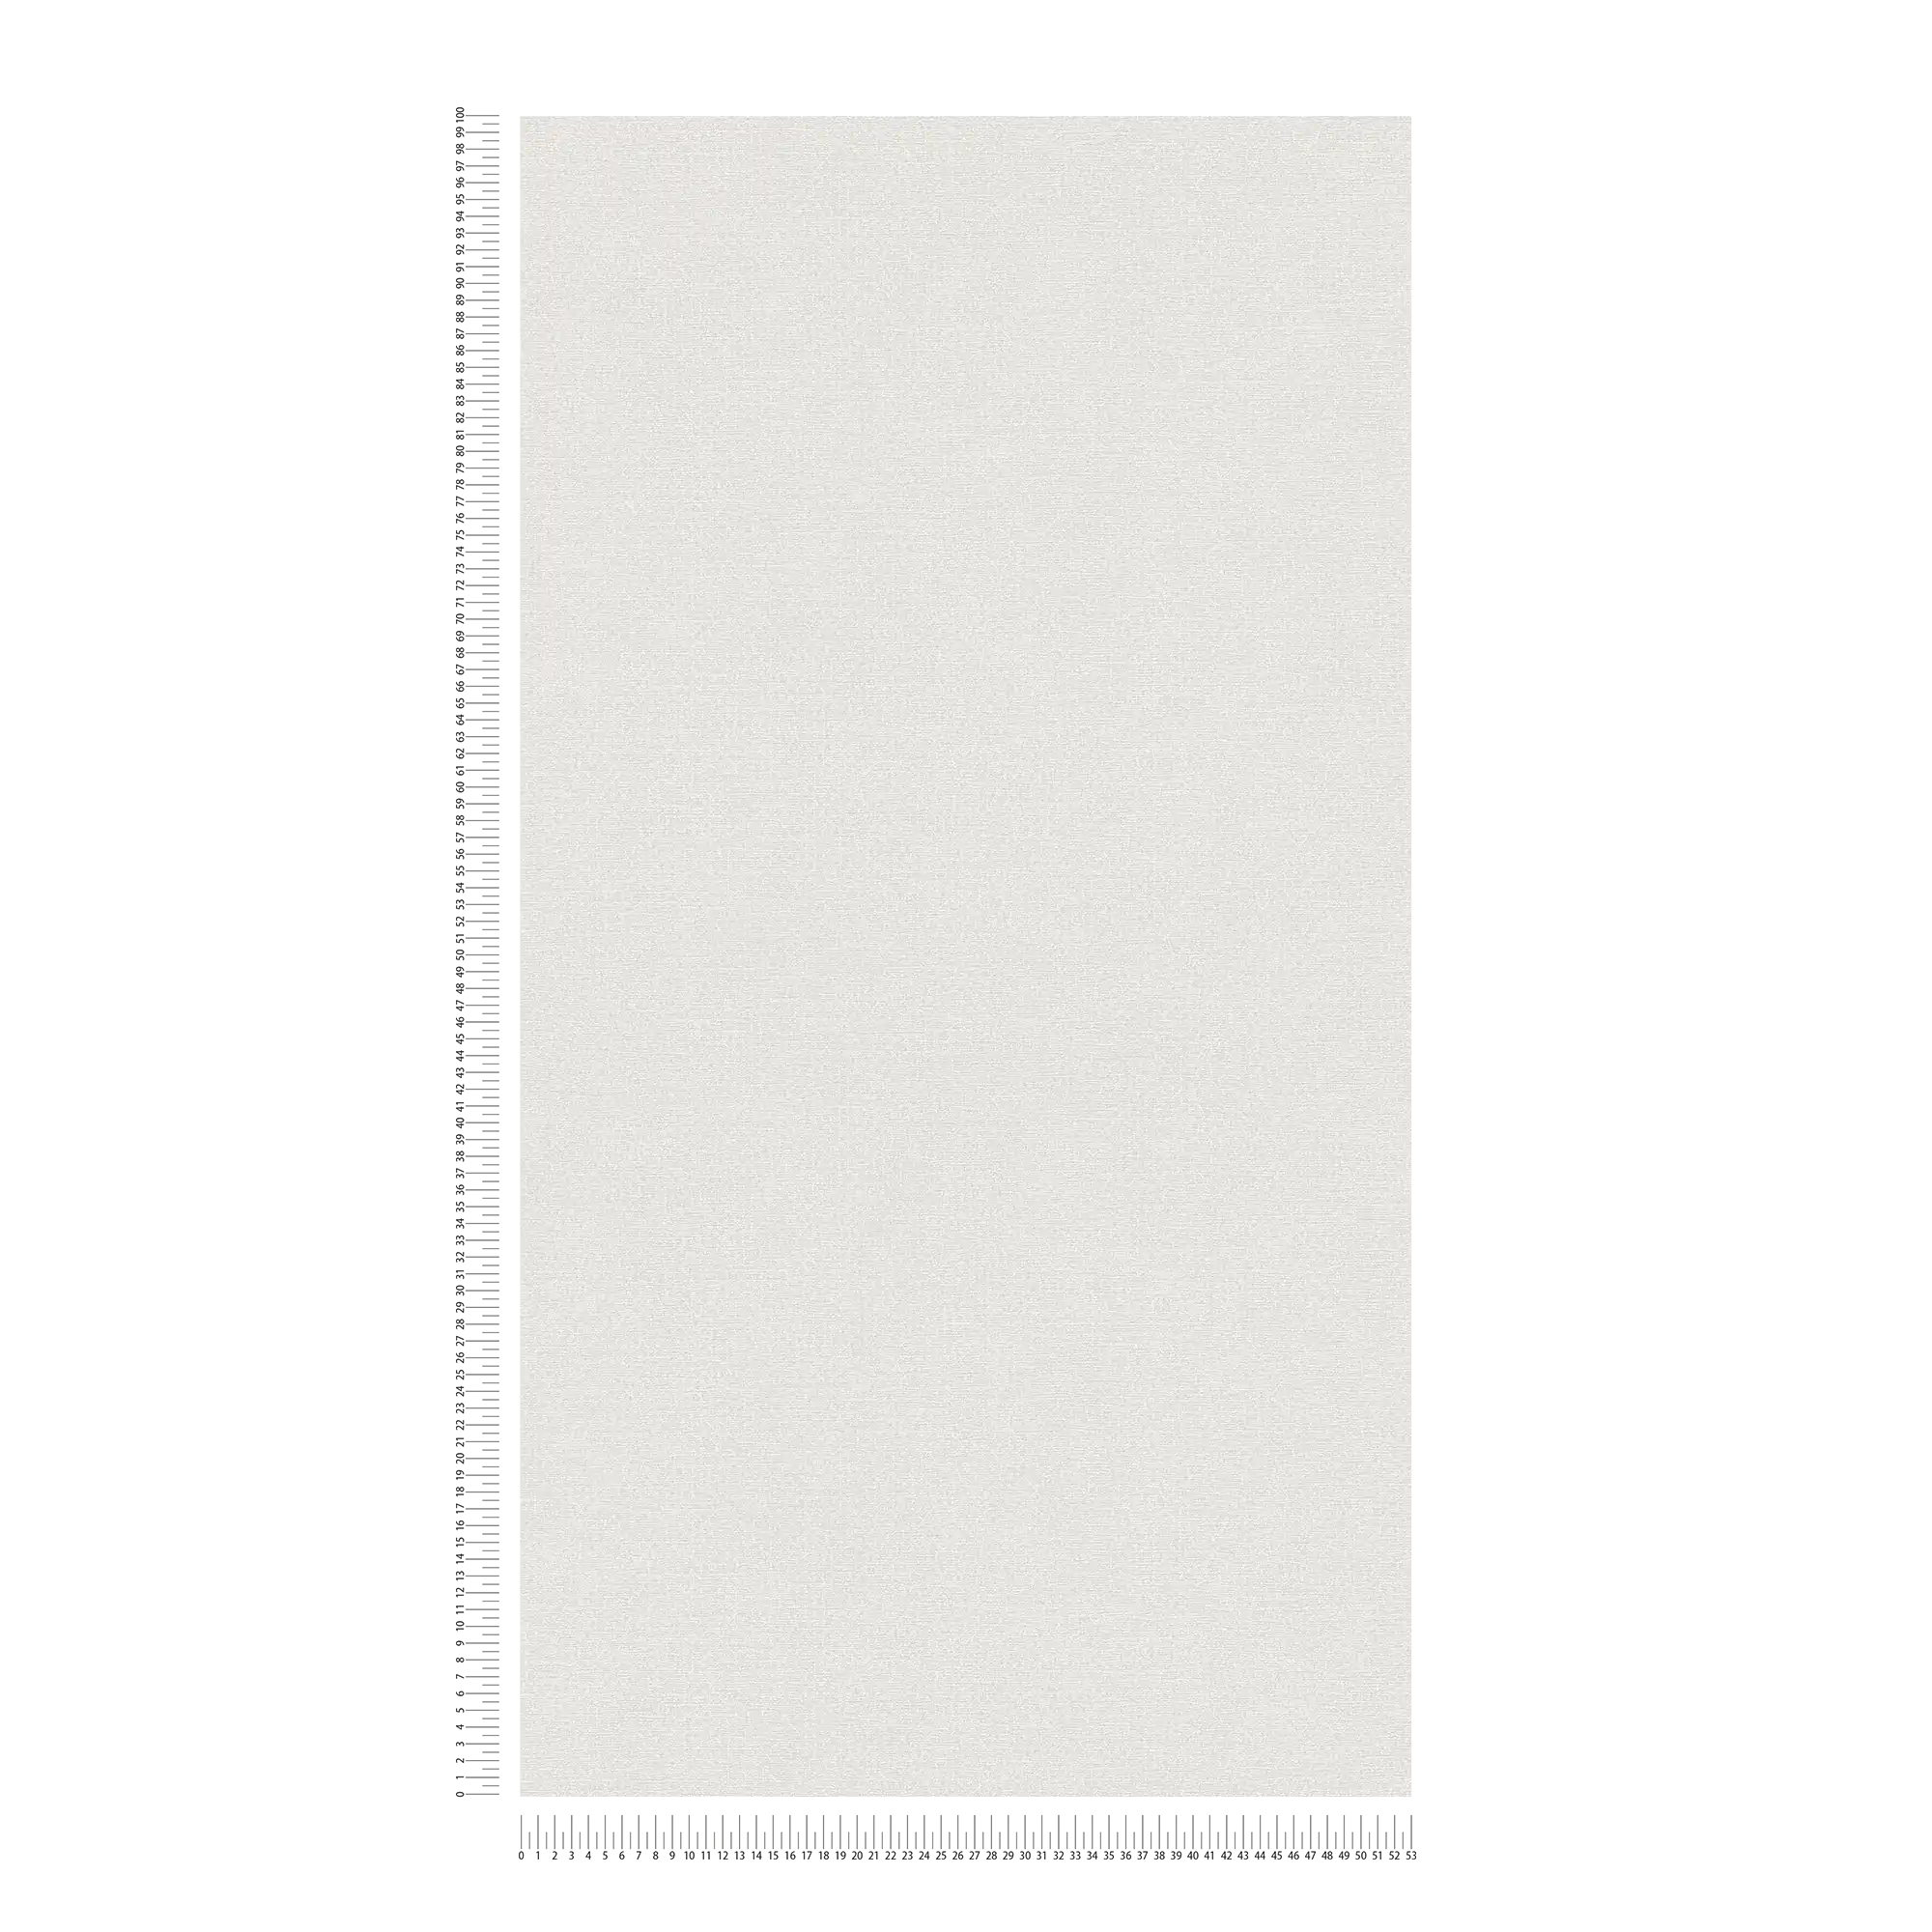             PVC-vrij glansbehang met gevlekt patroon - grijs, wit
        